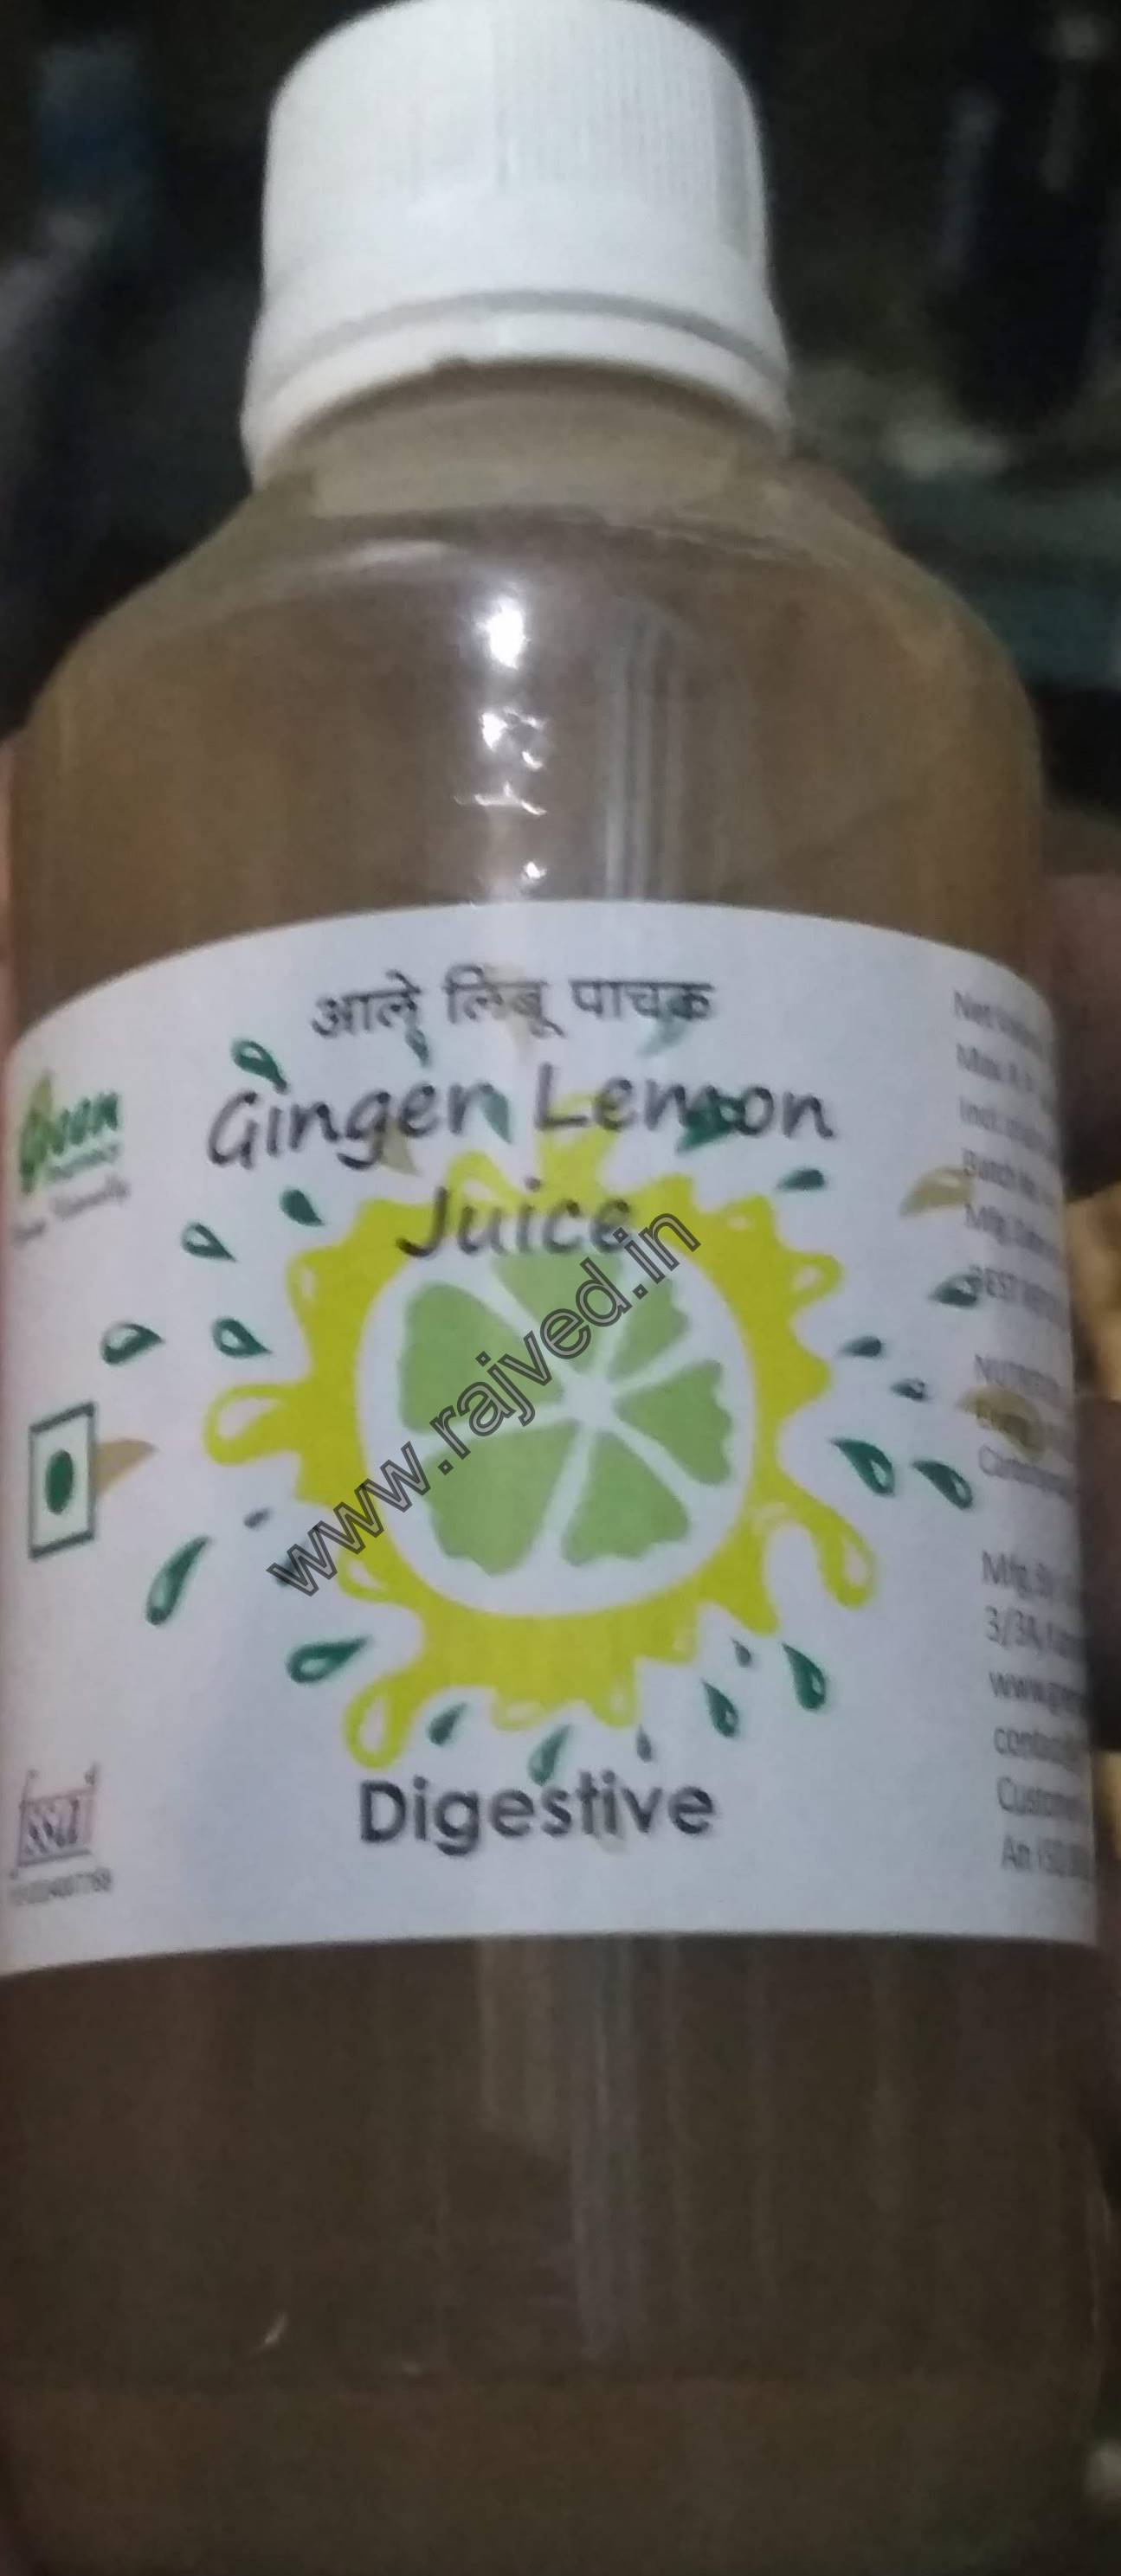 ginger lemon juice 200ml green pharmacy